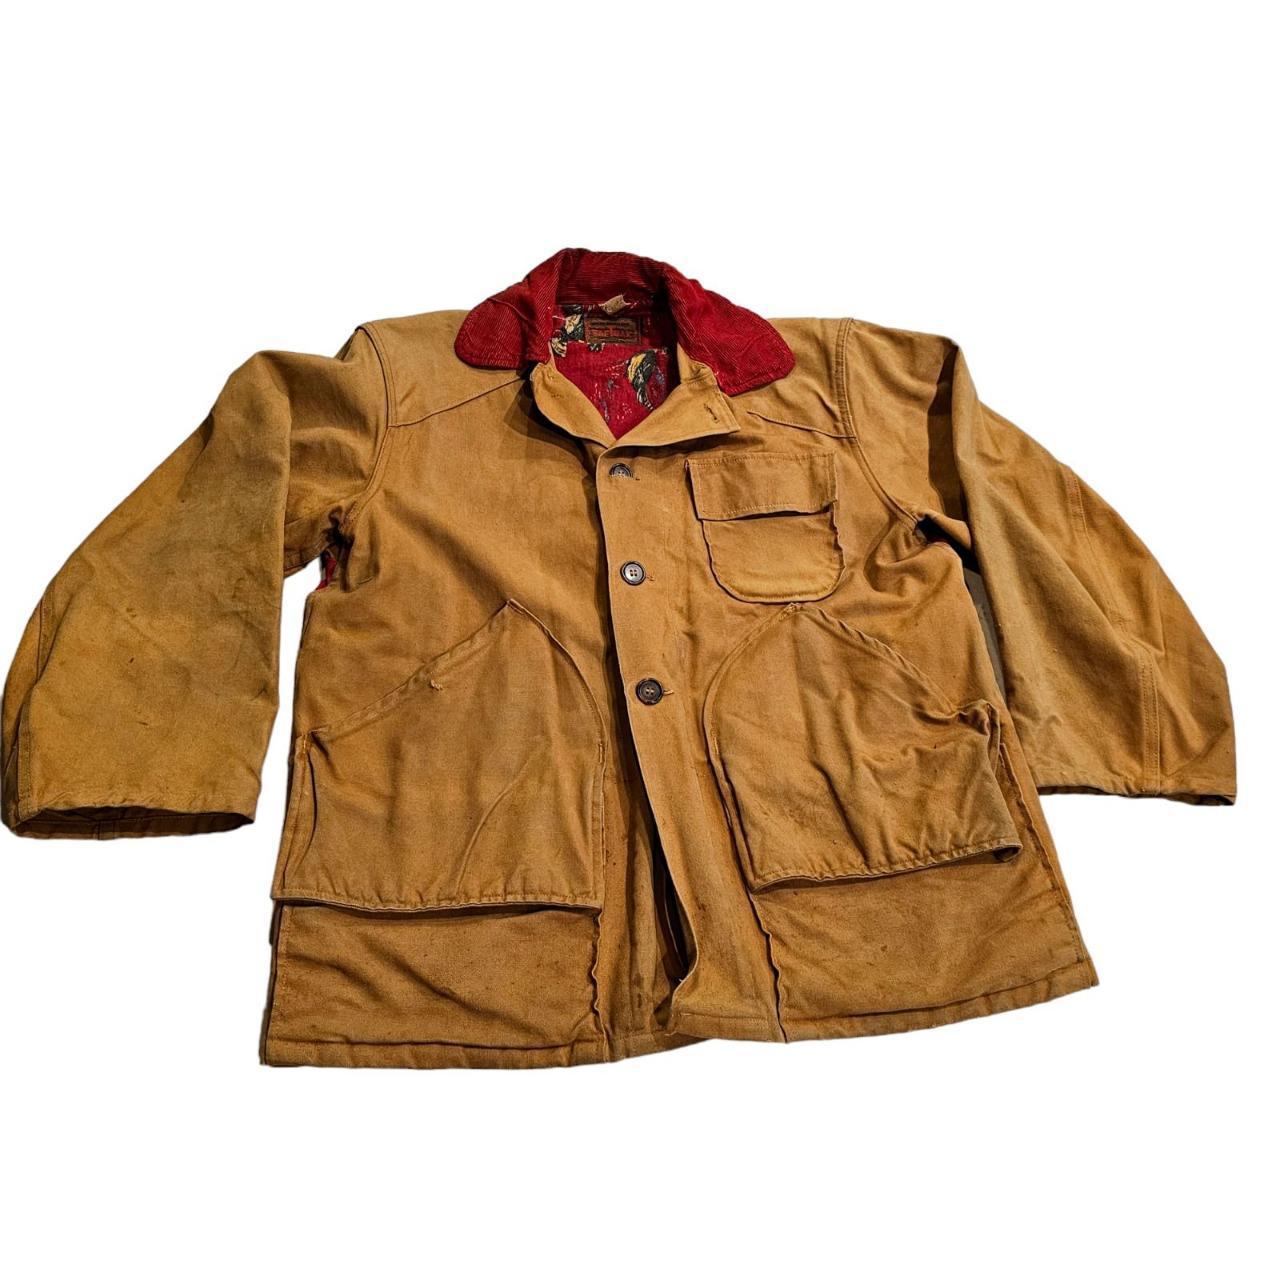 Vintage SAFTBAK Hunting Jacket with Game Pocket -... - Depop